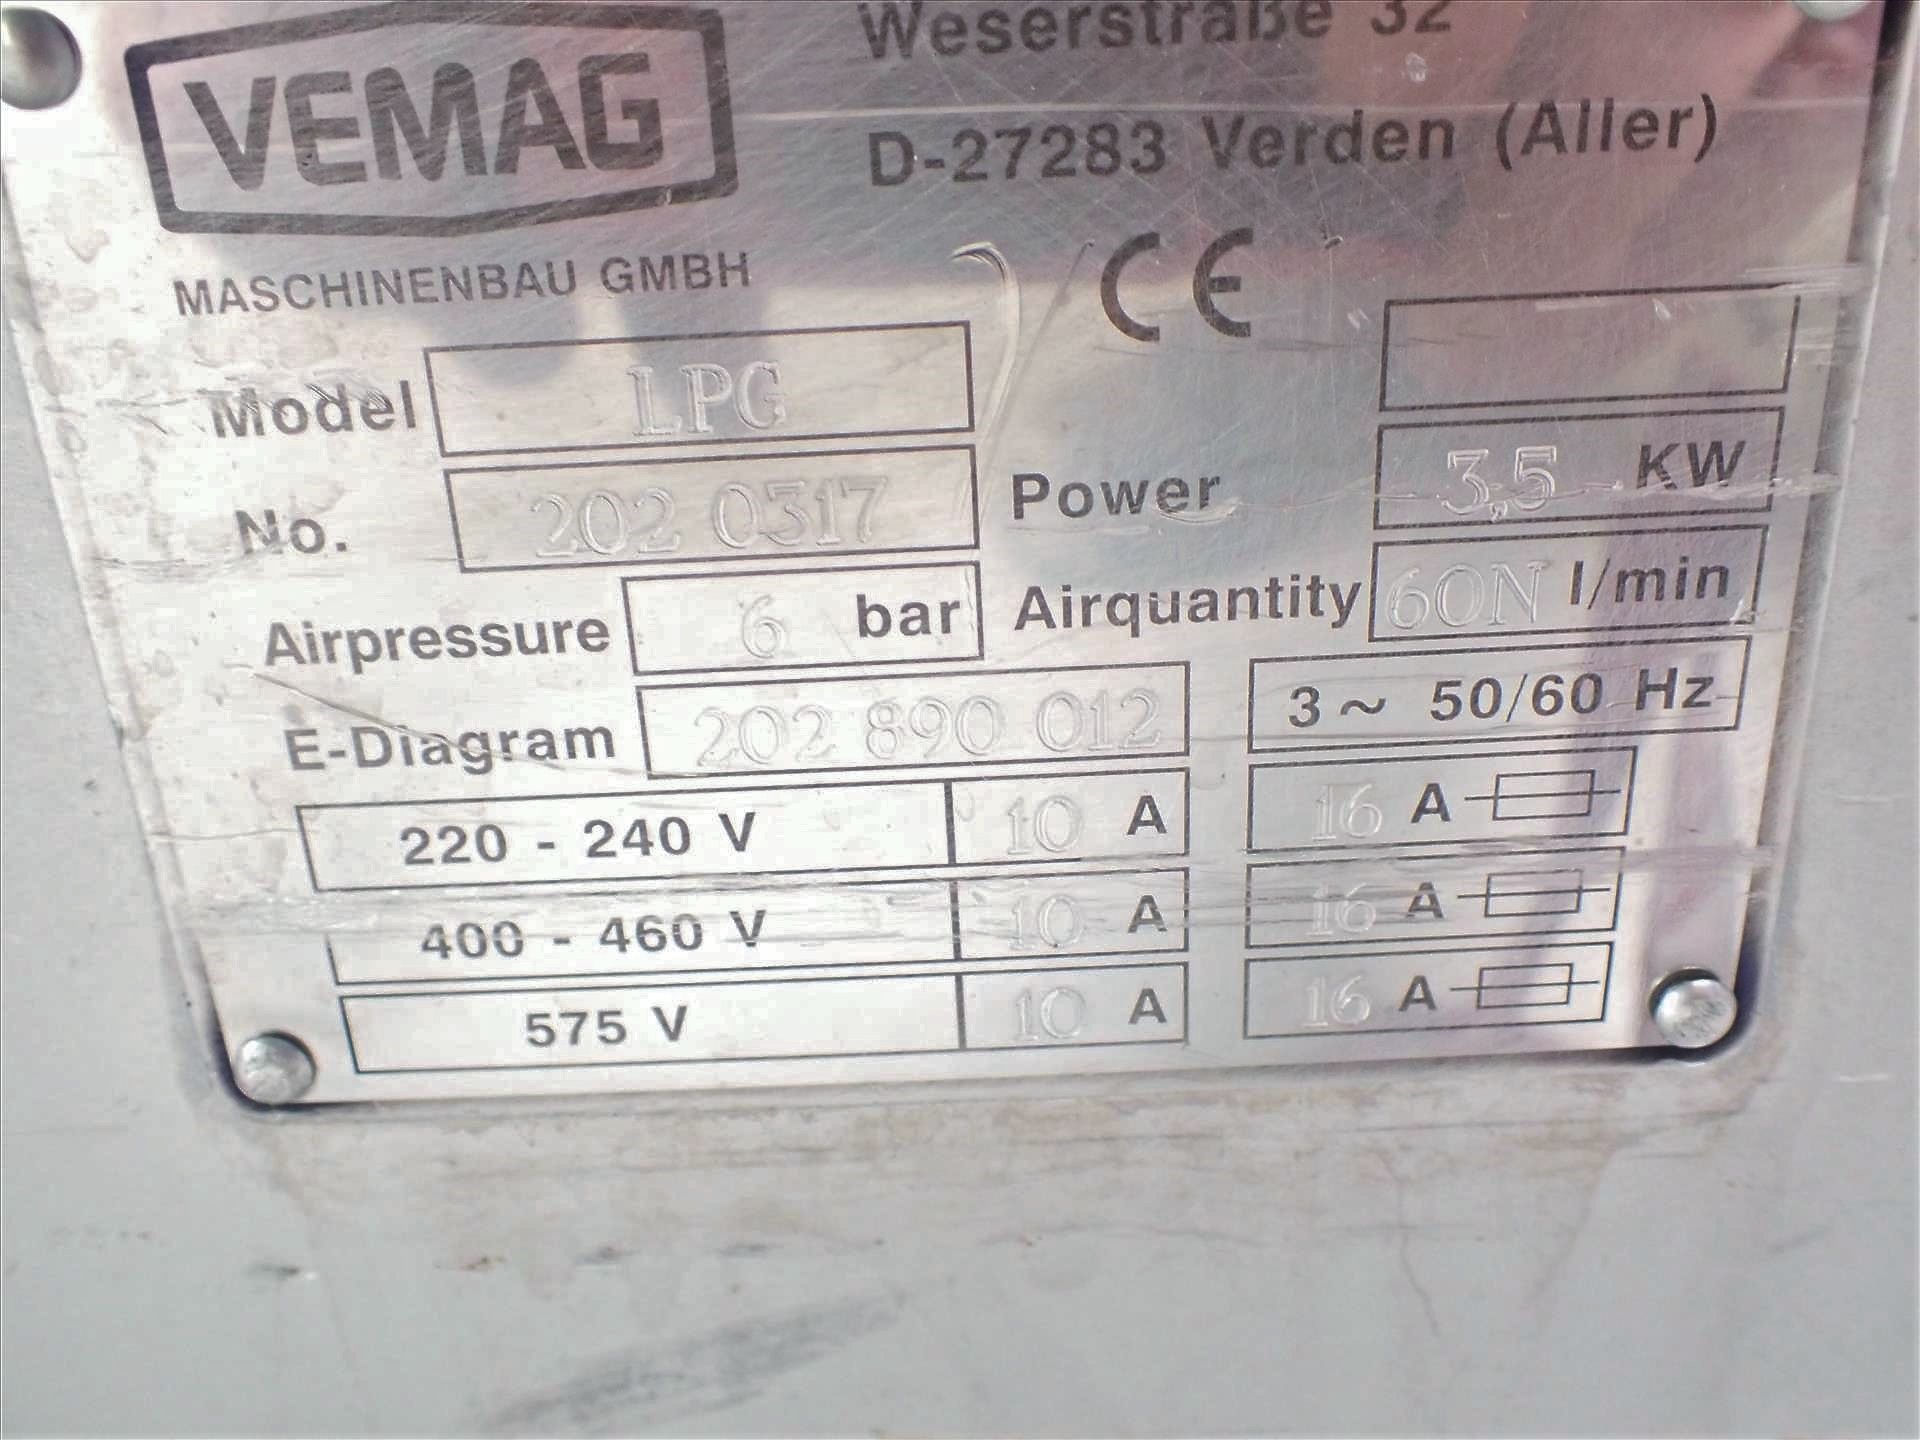 Vemag sausage linker, mod. LPG-202, ser. no. 2020317, 3.5 kW - Image 4 of 4